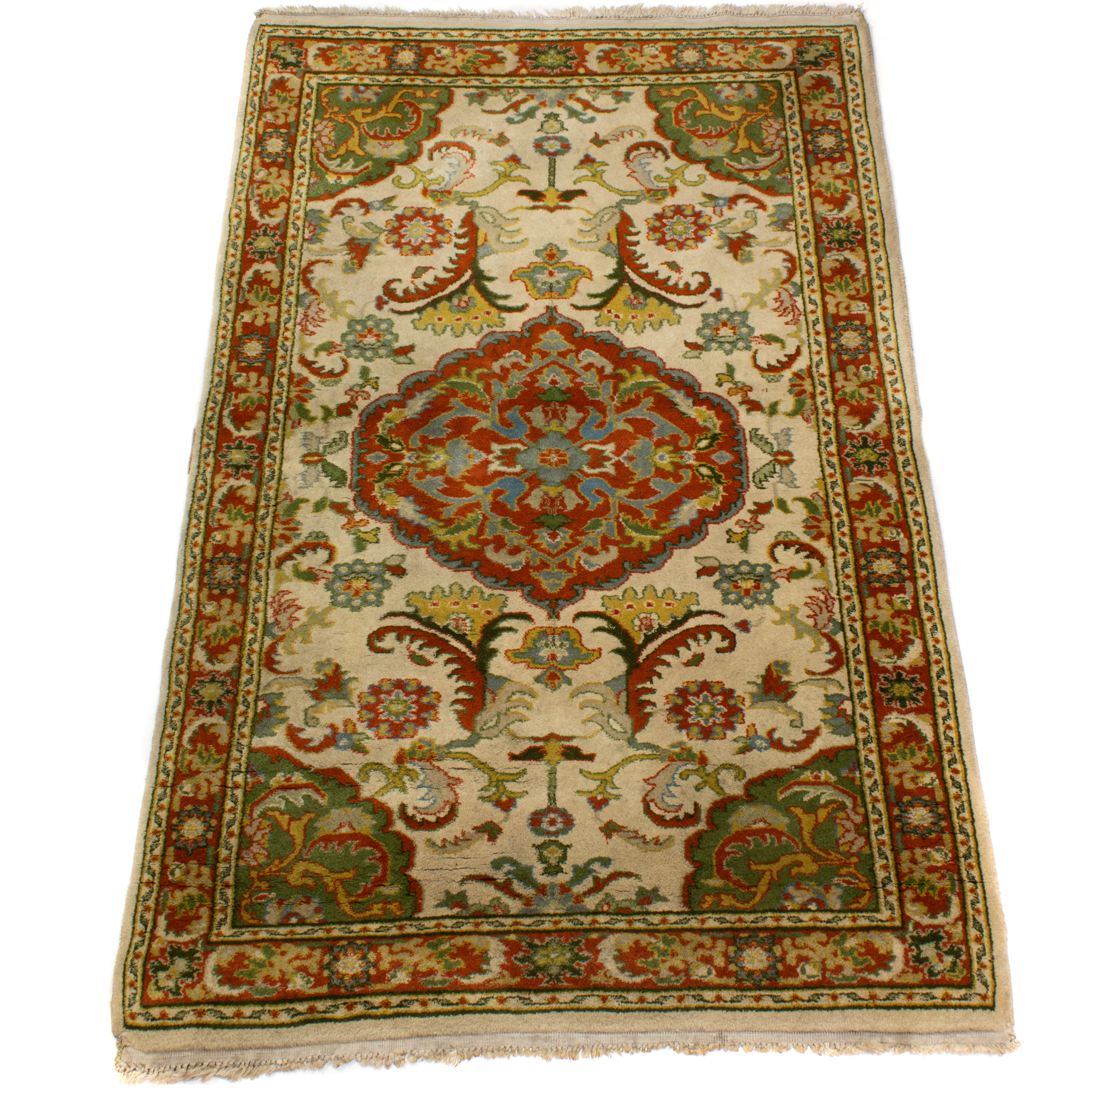 PAKISTANI CARPET Pakistani carpet  2d131a